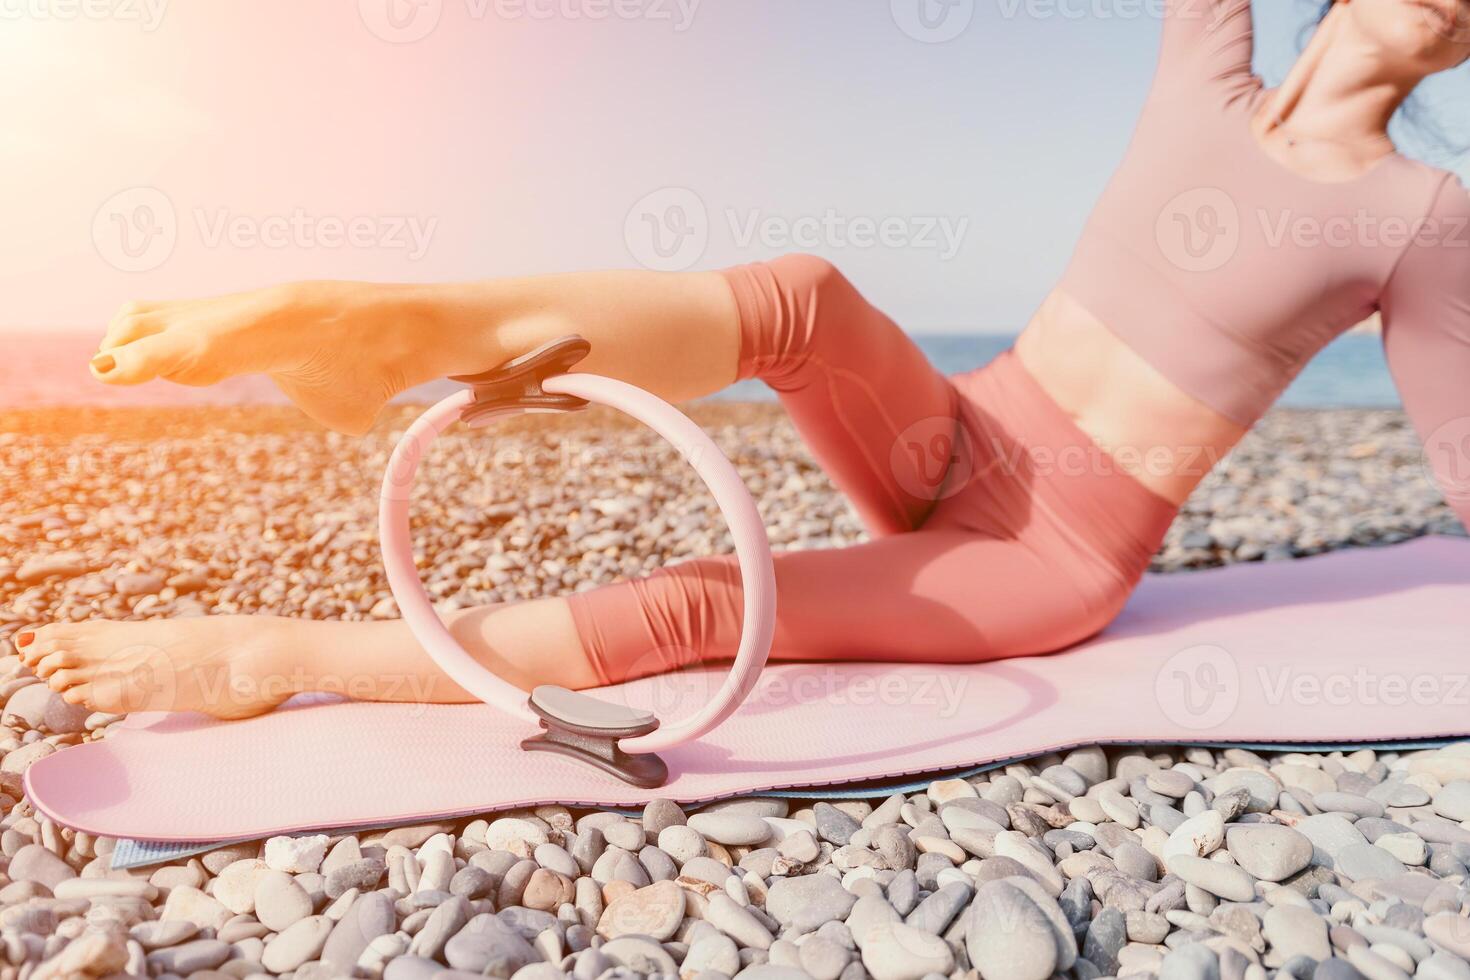 Frau Meer Pilates. sportlich glücklich Mitte alt Frau üben Fitness auf Strand in der Nähe von Meer, lächelnd aktiv weiblich Ausbildung mit Ring auf Yoga Matte außen, genießen gesund Lebensstil, Harmonie und Meditation foto